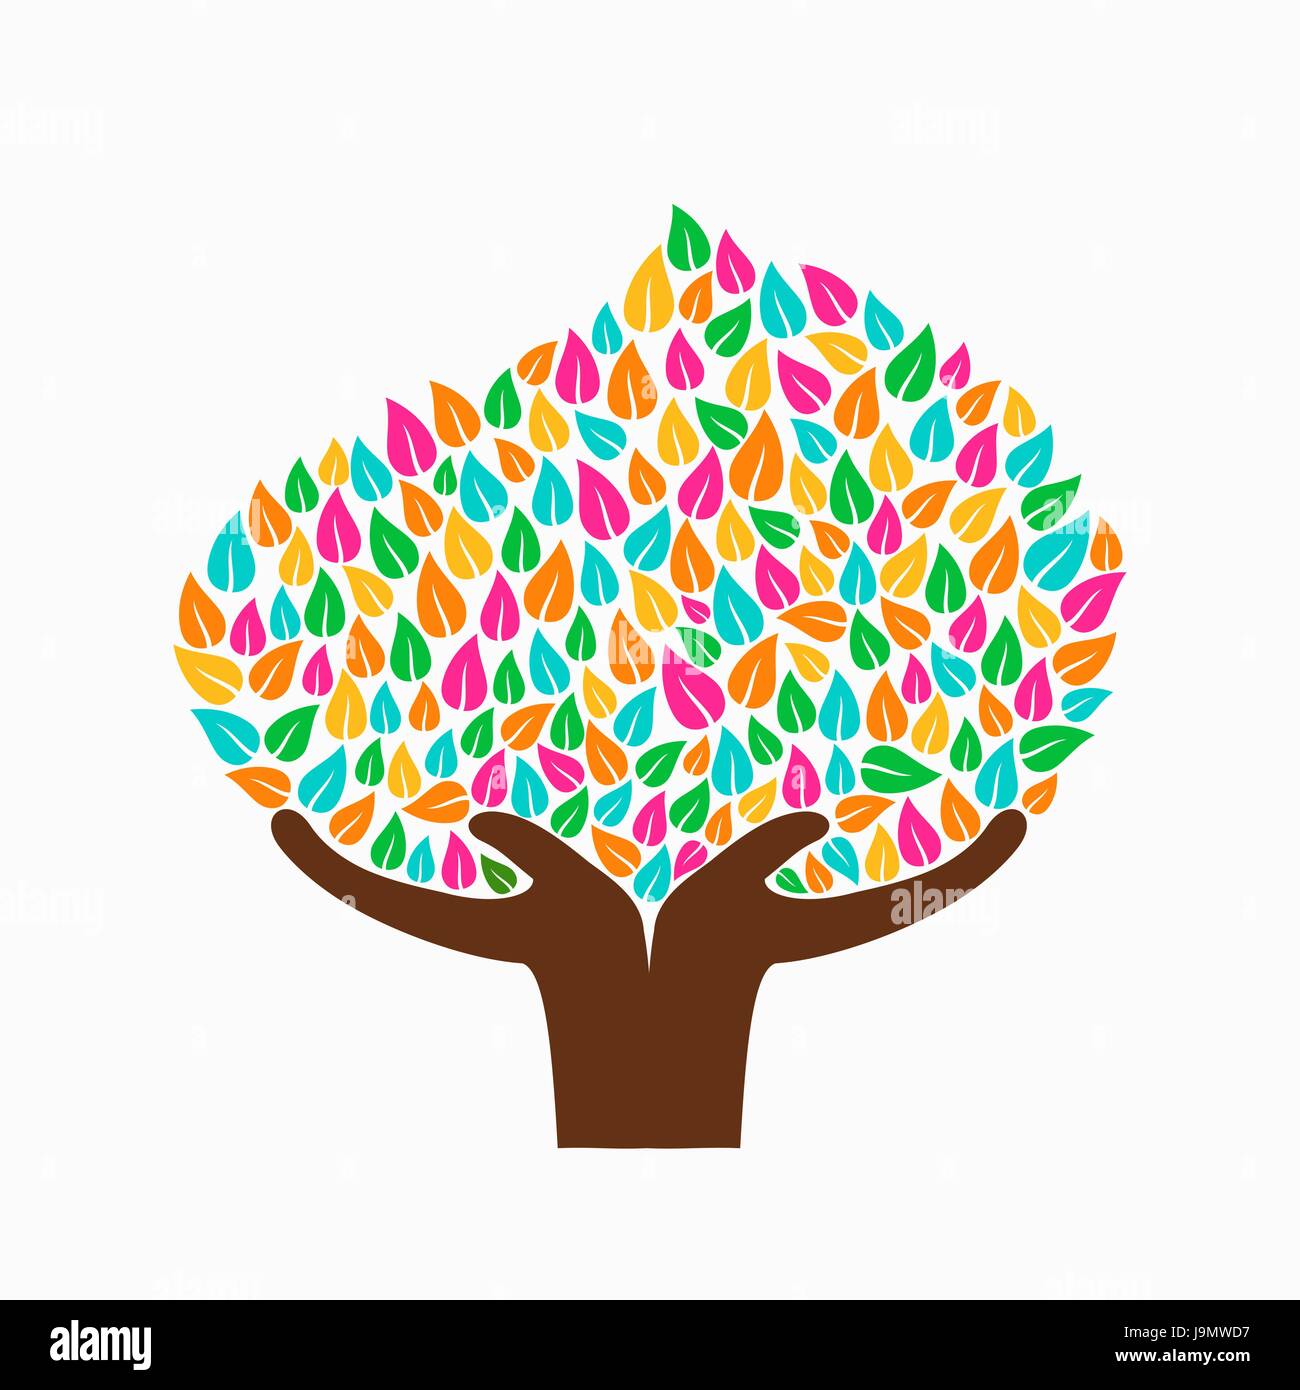 Symbole de l'arbre avec des mains et les feuilles multicolores. Concept illustration pour aider à l'organisation du projet, l'environnement ou de travail social. Vecteur EPS10. Illustration de Vecteur